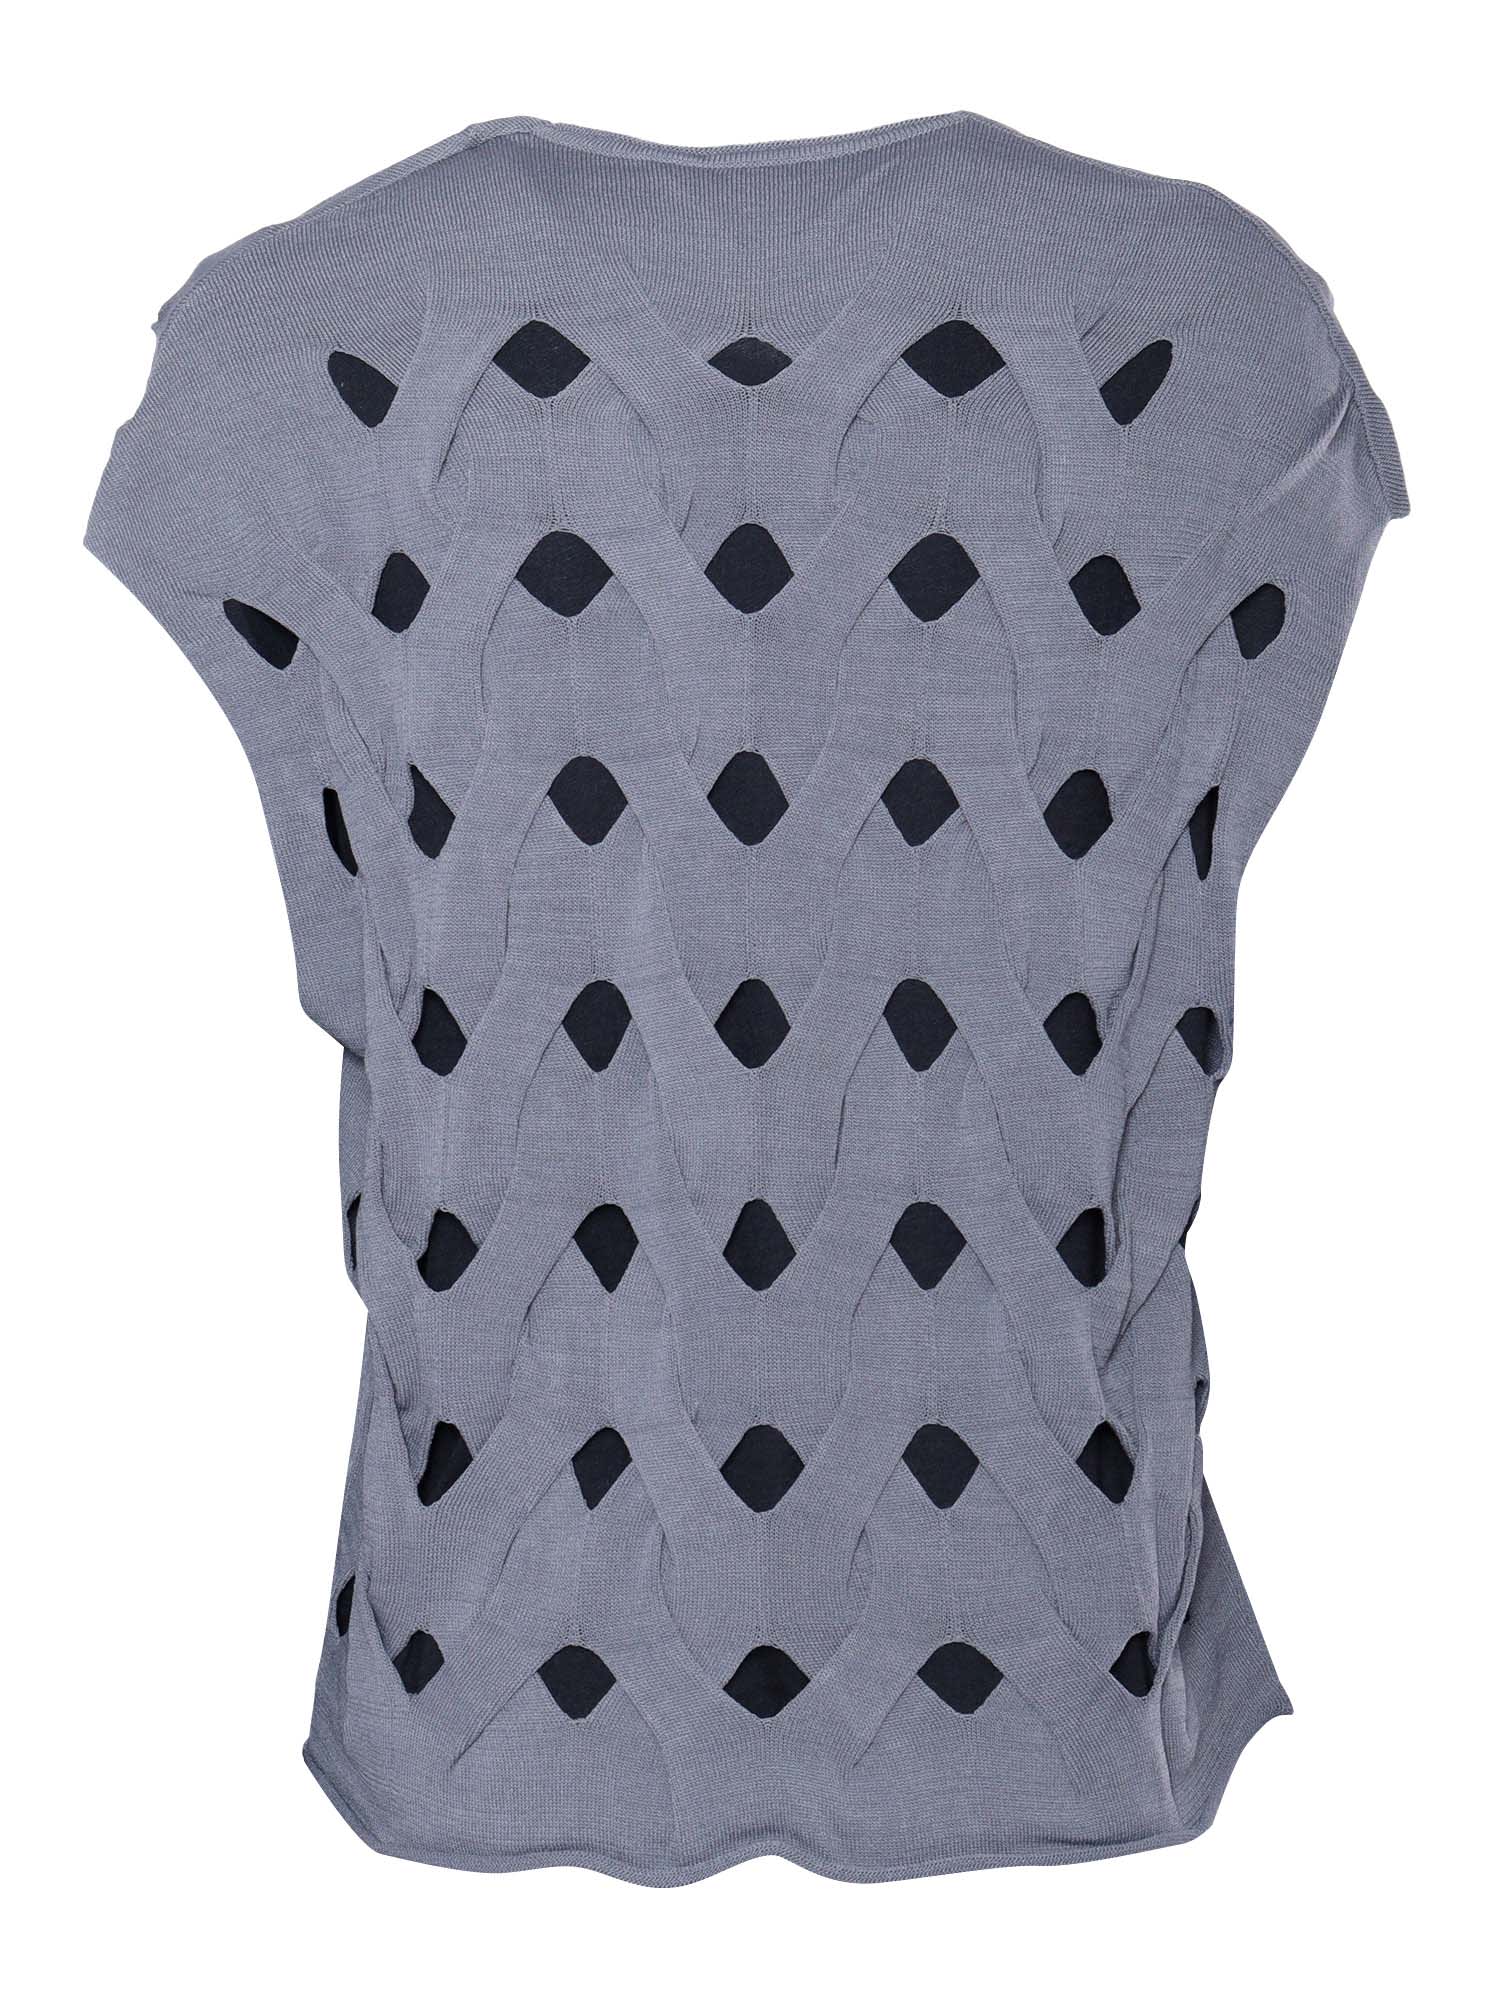 Shop Kangra Grey Woven-stitch Vest